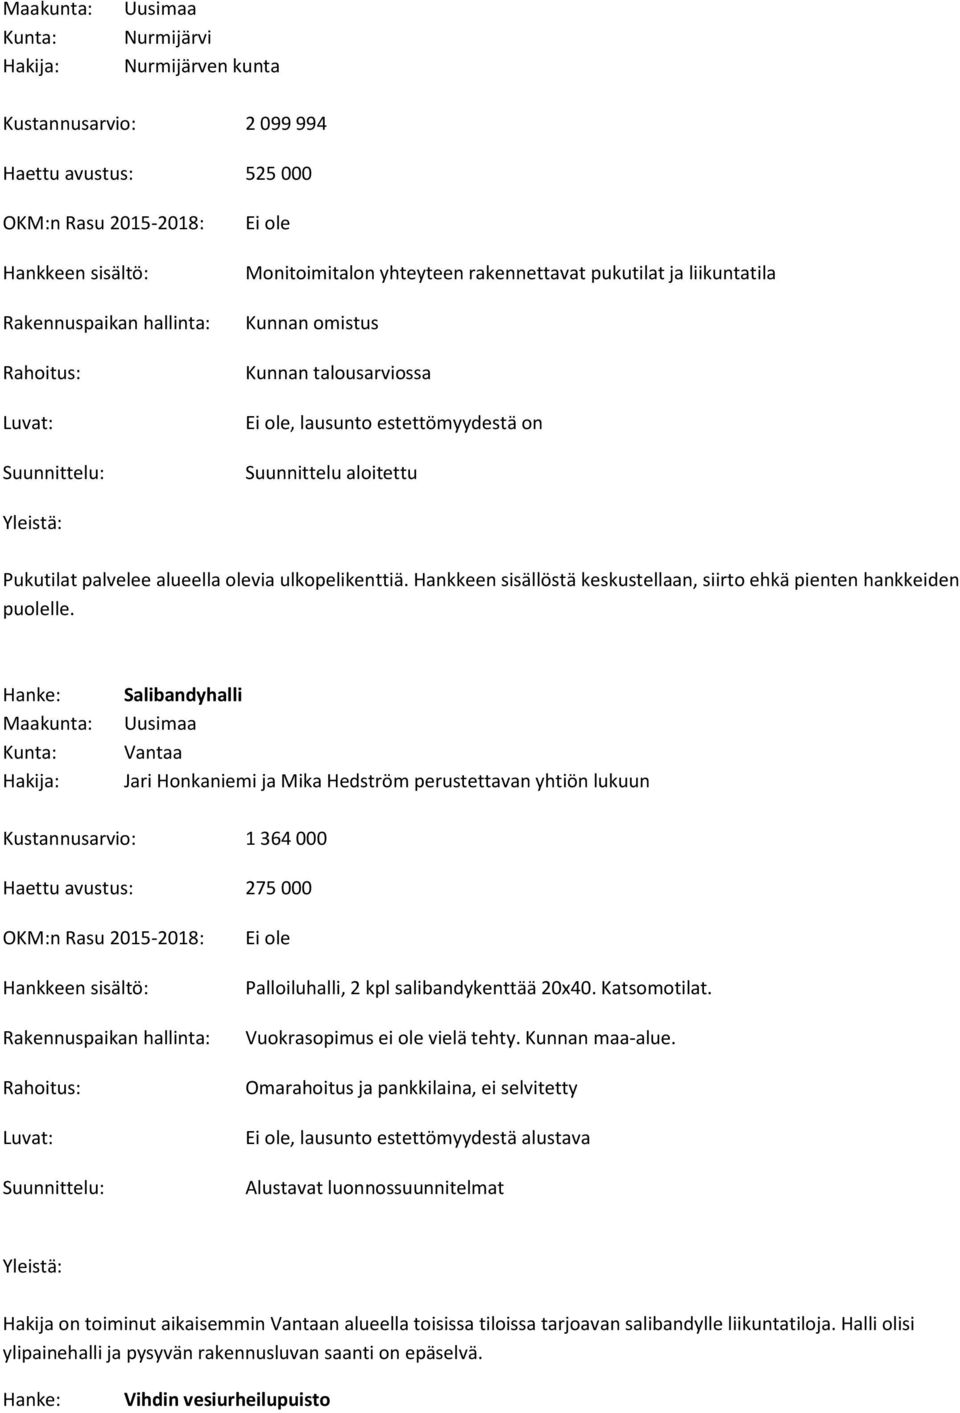 Salibandyhalli Vantaa Jari Honkaniemi ja Mika Hedström perustettavan yhtiön lukuun Kustannusarvio: 1 364 000 Haettu avustus: 275 000 Palloiluhalli, 2 kpl salibandykenttää 20x40. Katsomotilat.